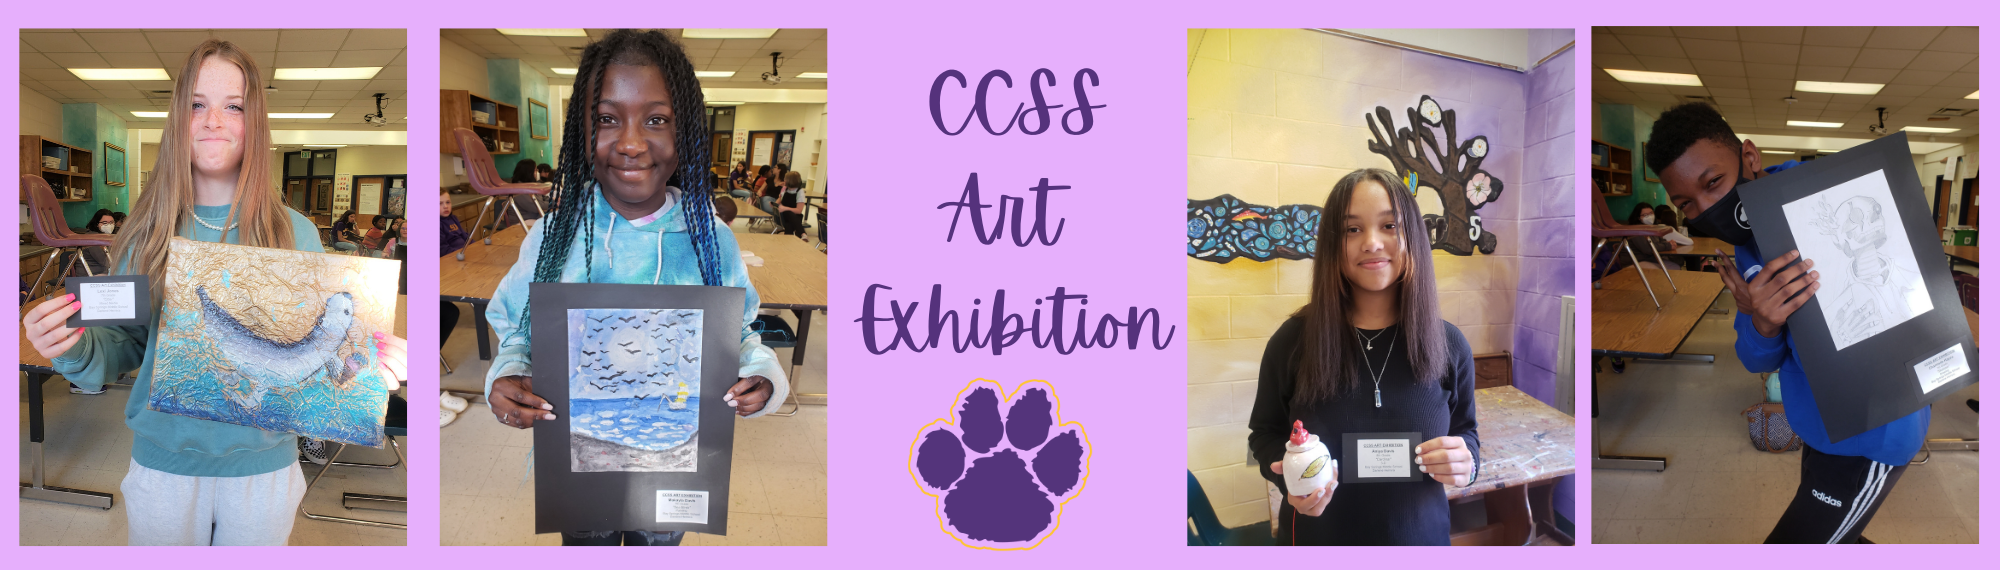 CCSS Art Exhibition